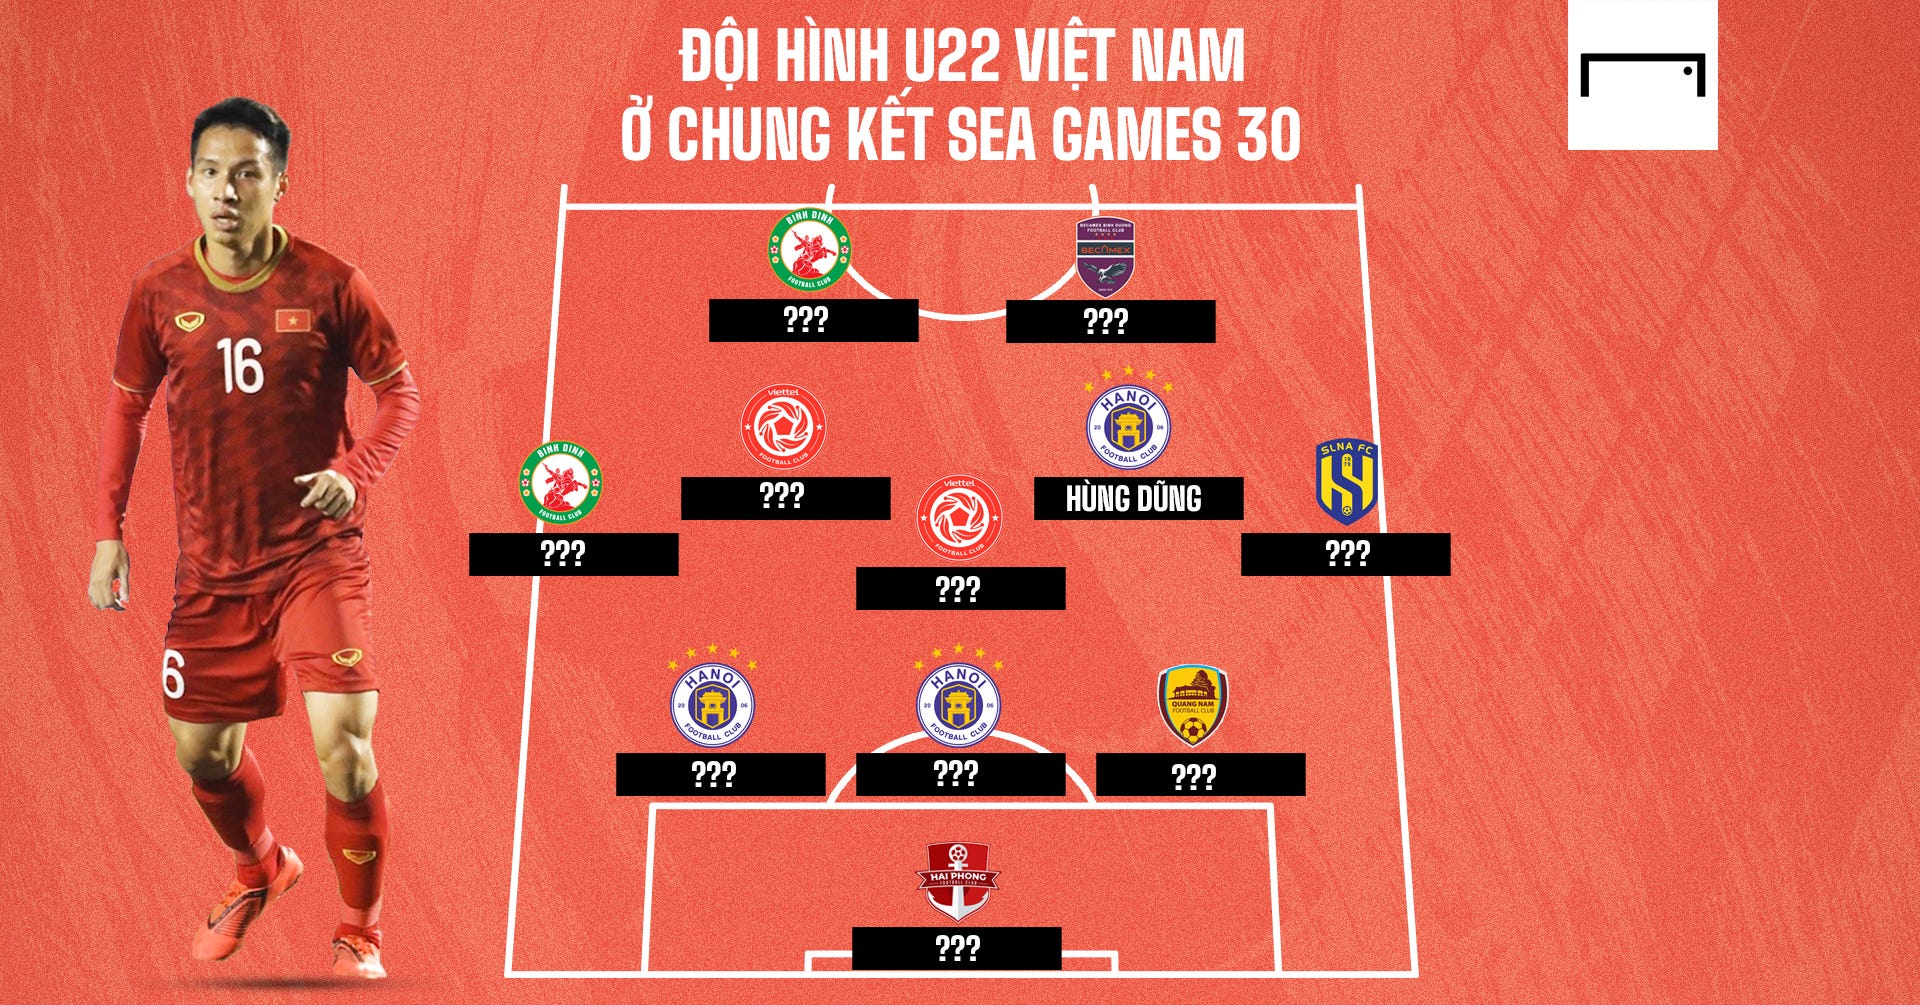 Đội hình U22 Việt Nam vào chung kết SEA Games 30 giờ ra sao?